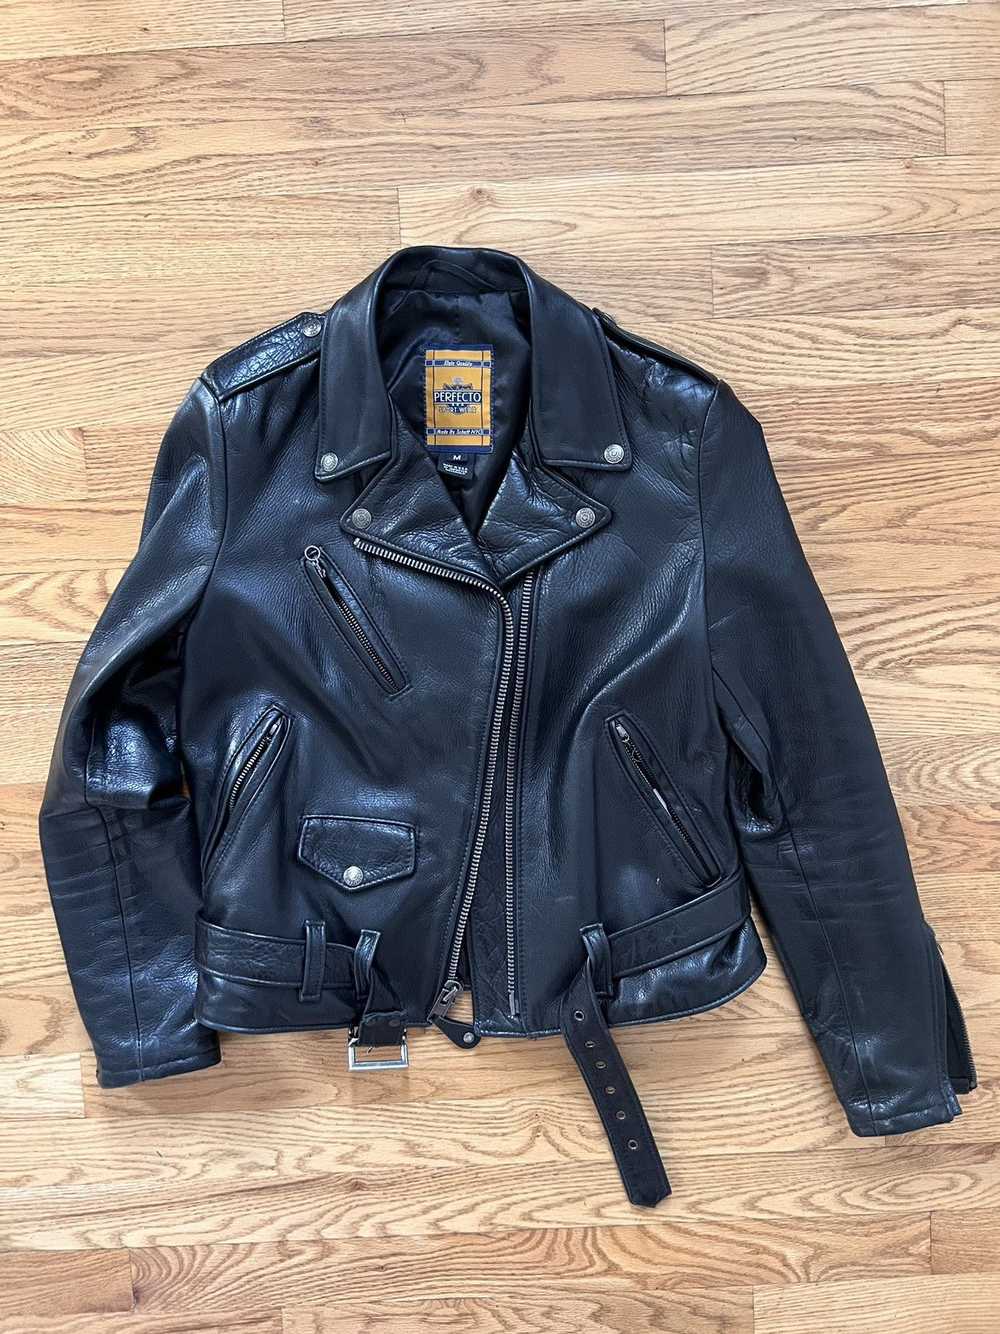 Schott Schott Perfecto 536W Leather Jacket - image 1